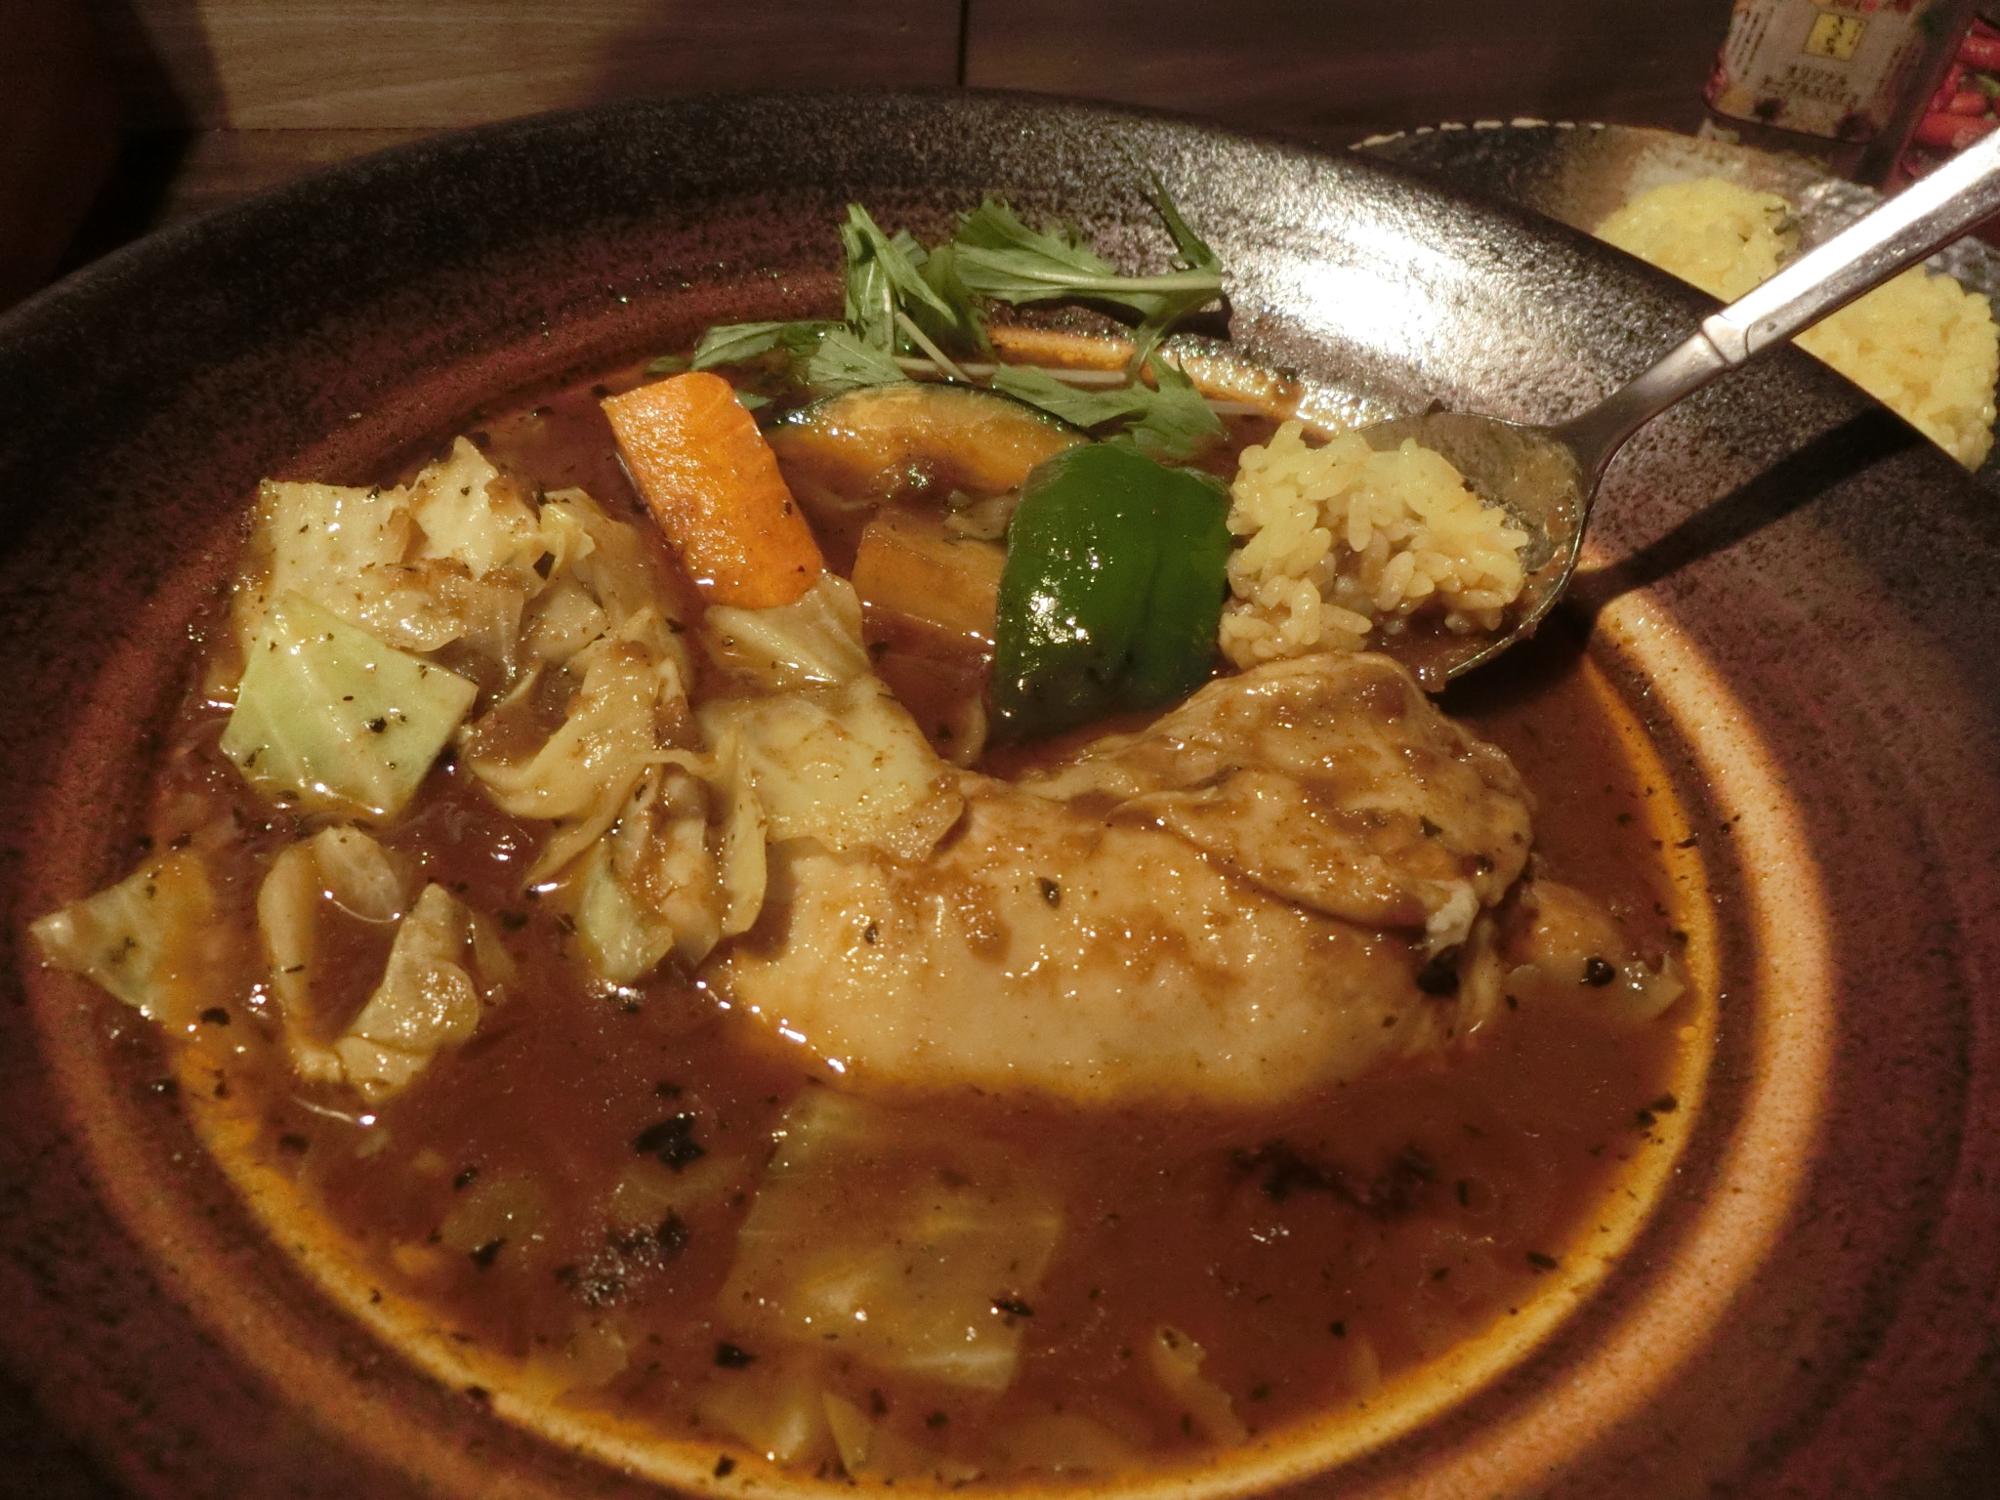 スープは北海道産のブタ骨、鶏、牛骨、野菜を煮込んだブイヨンをベースにオリジナルスパイスで仕上げられてます。